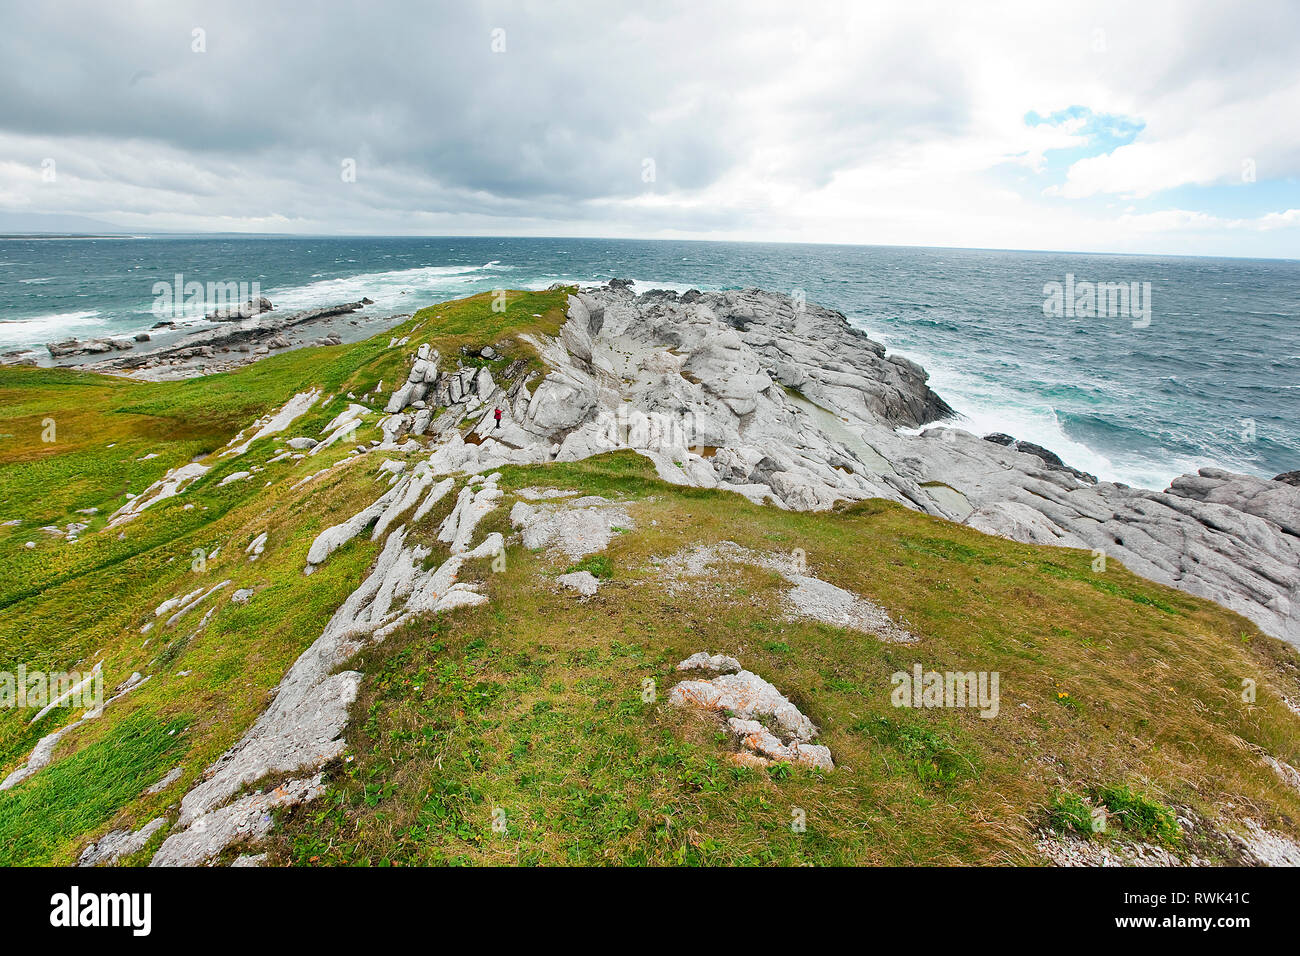 Cambrian und Ordovicia ära Felsformationen bis in den Golf von St. Lawrence am südwestlichen Ende des Lighthouse Trail auf der Kuh Head Halbinsel, Kuhkopf, westlichen Neufundland, Kanada Stockfoto